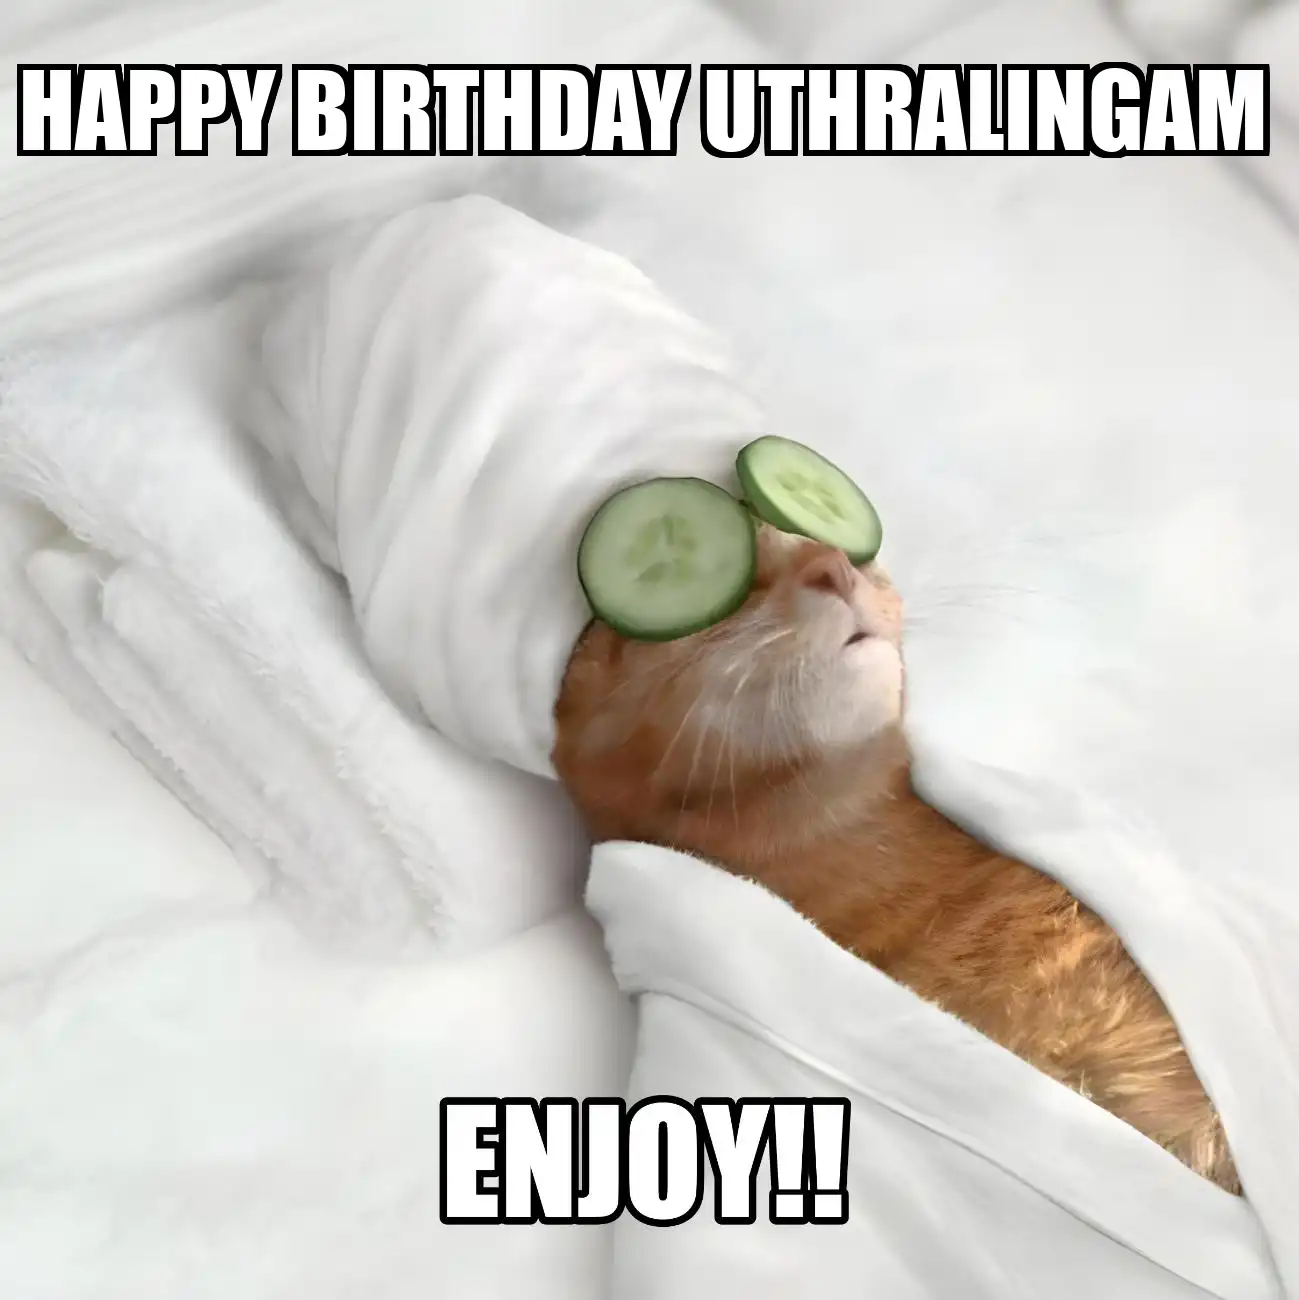 Happy Birthday Uthralingam Enjoy Cat Meme